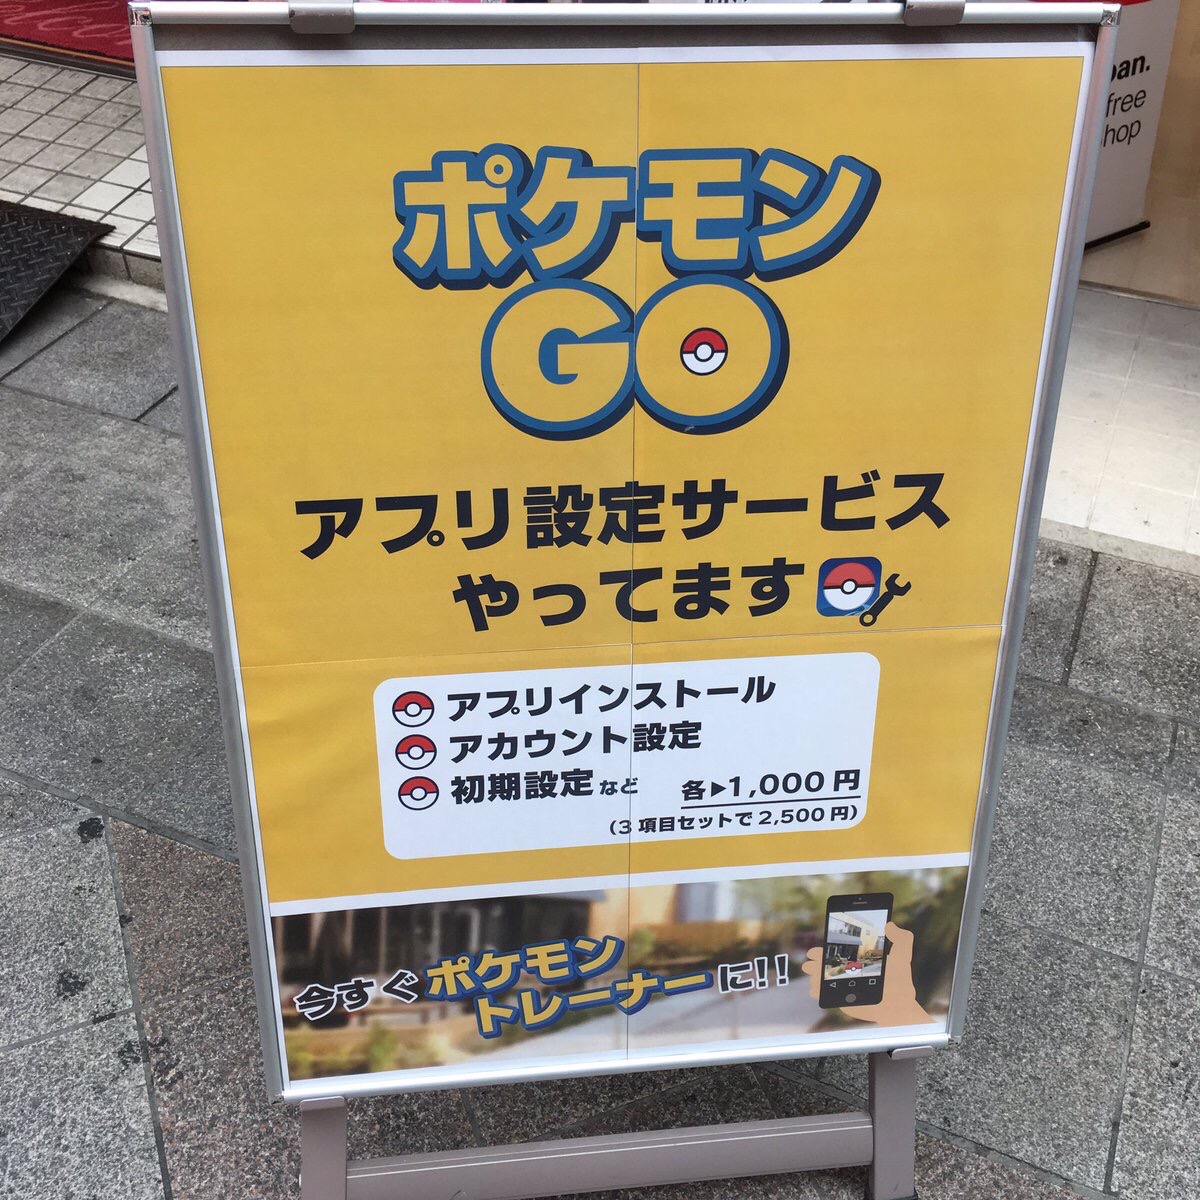 【朗報】ポケモンGOを1000円でインストールしてくれるサービスがあるらしい